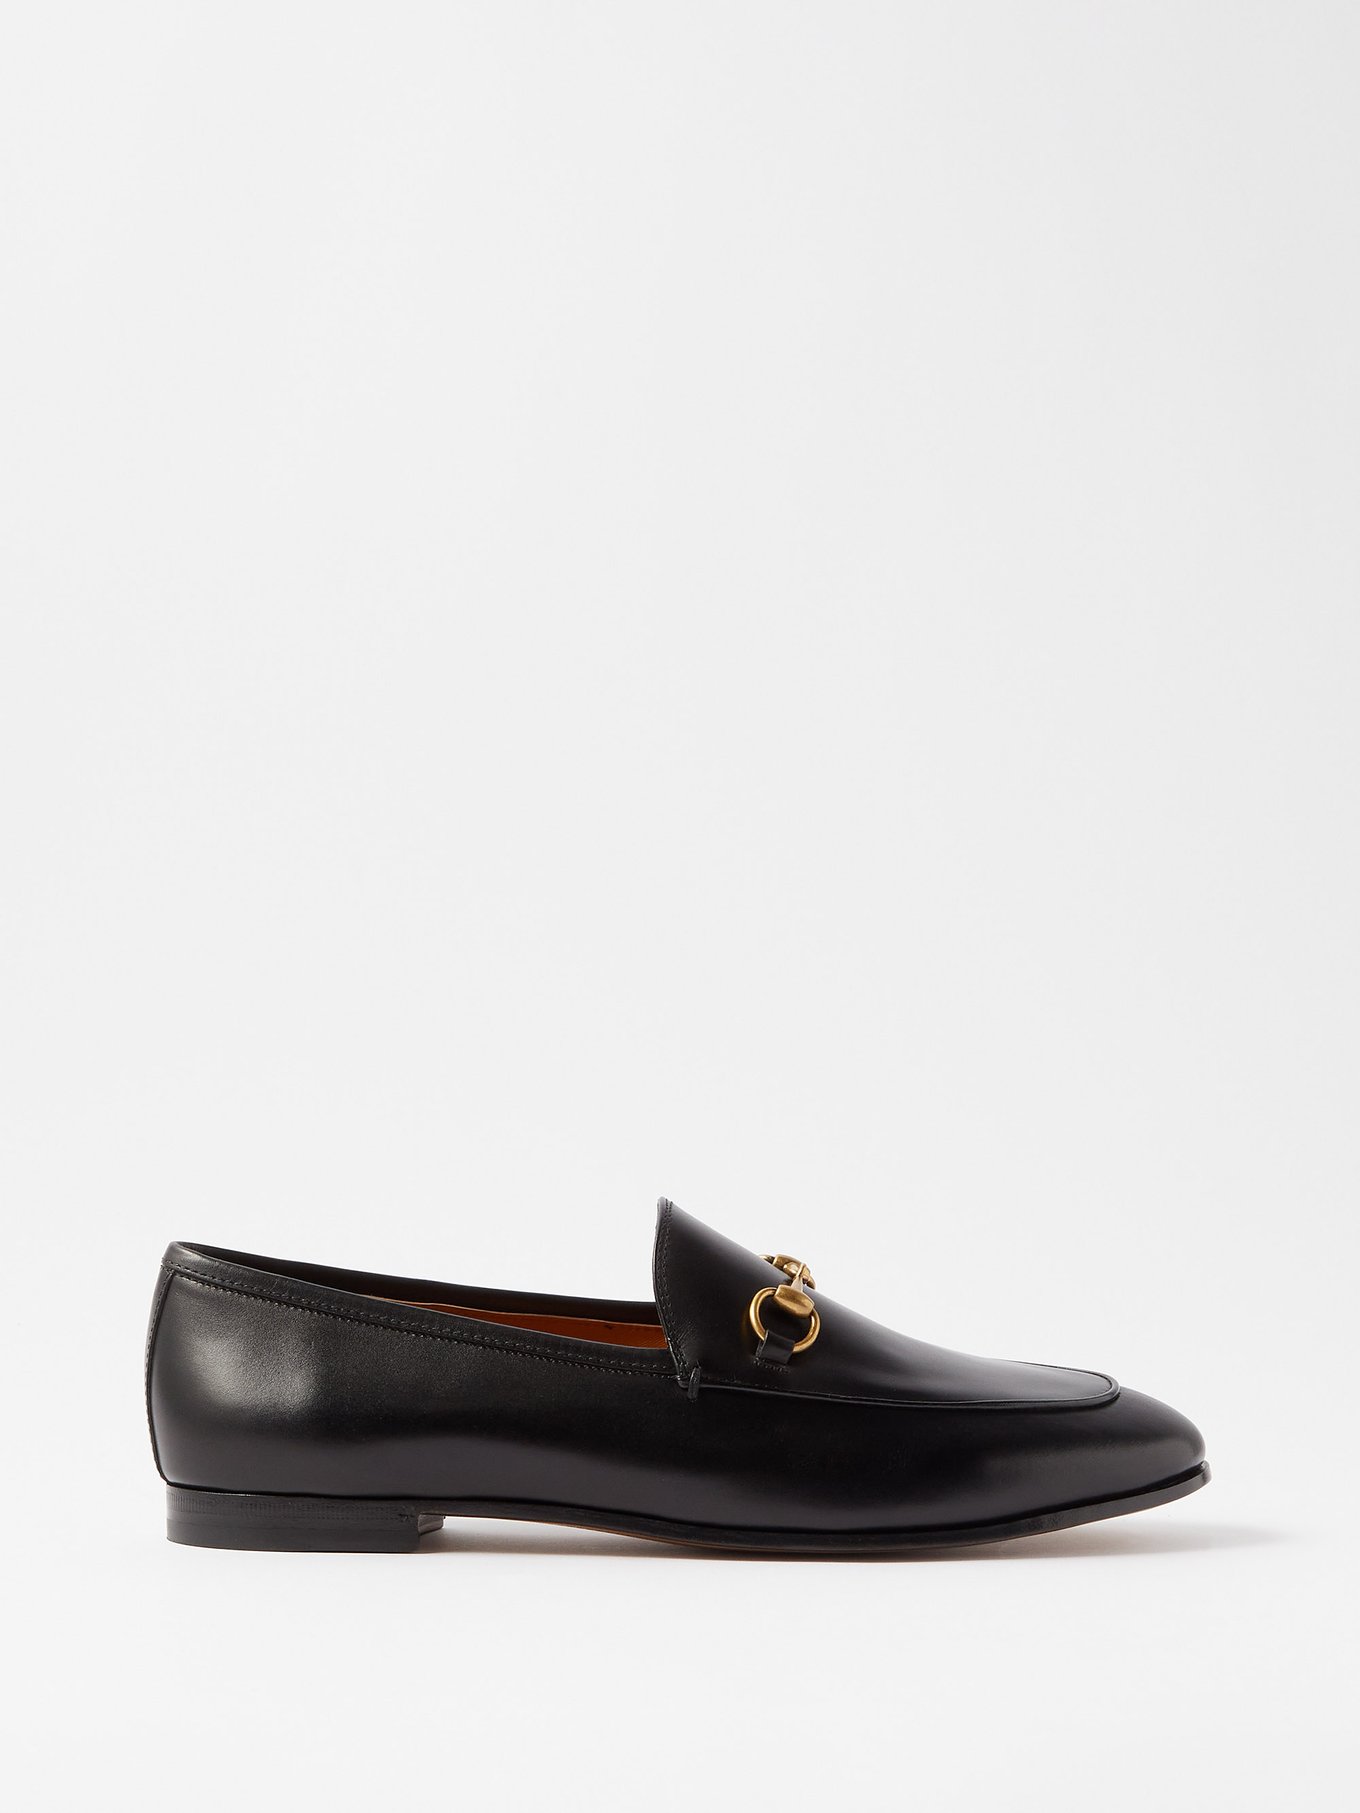 GUCCI Jordaan Loafers Flats Size 36 EU Black Horsebit Logo Gold Dress Shoes